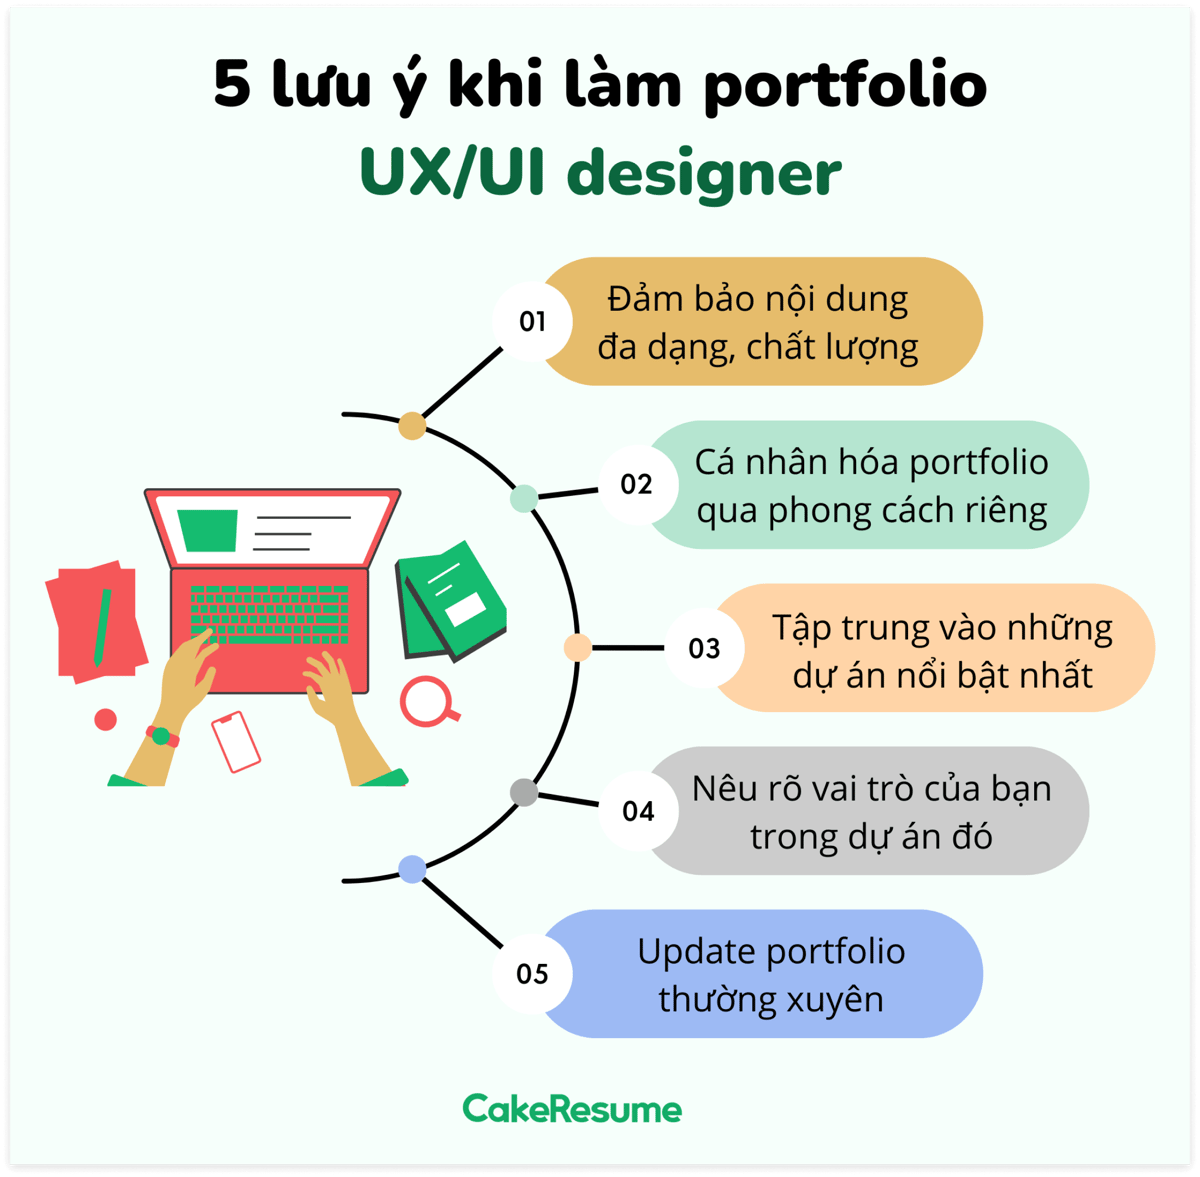 portfolio cho UX/UI designer